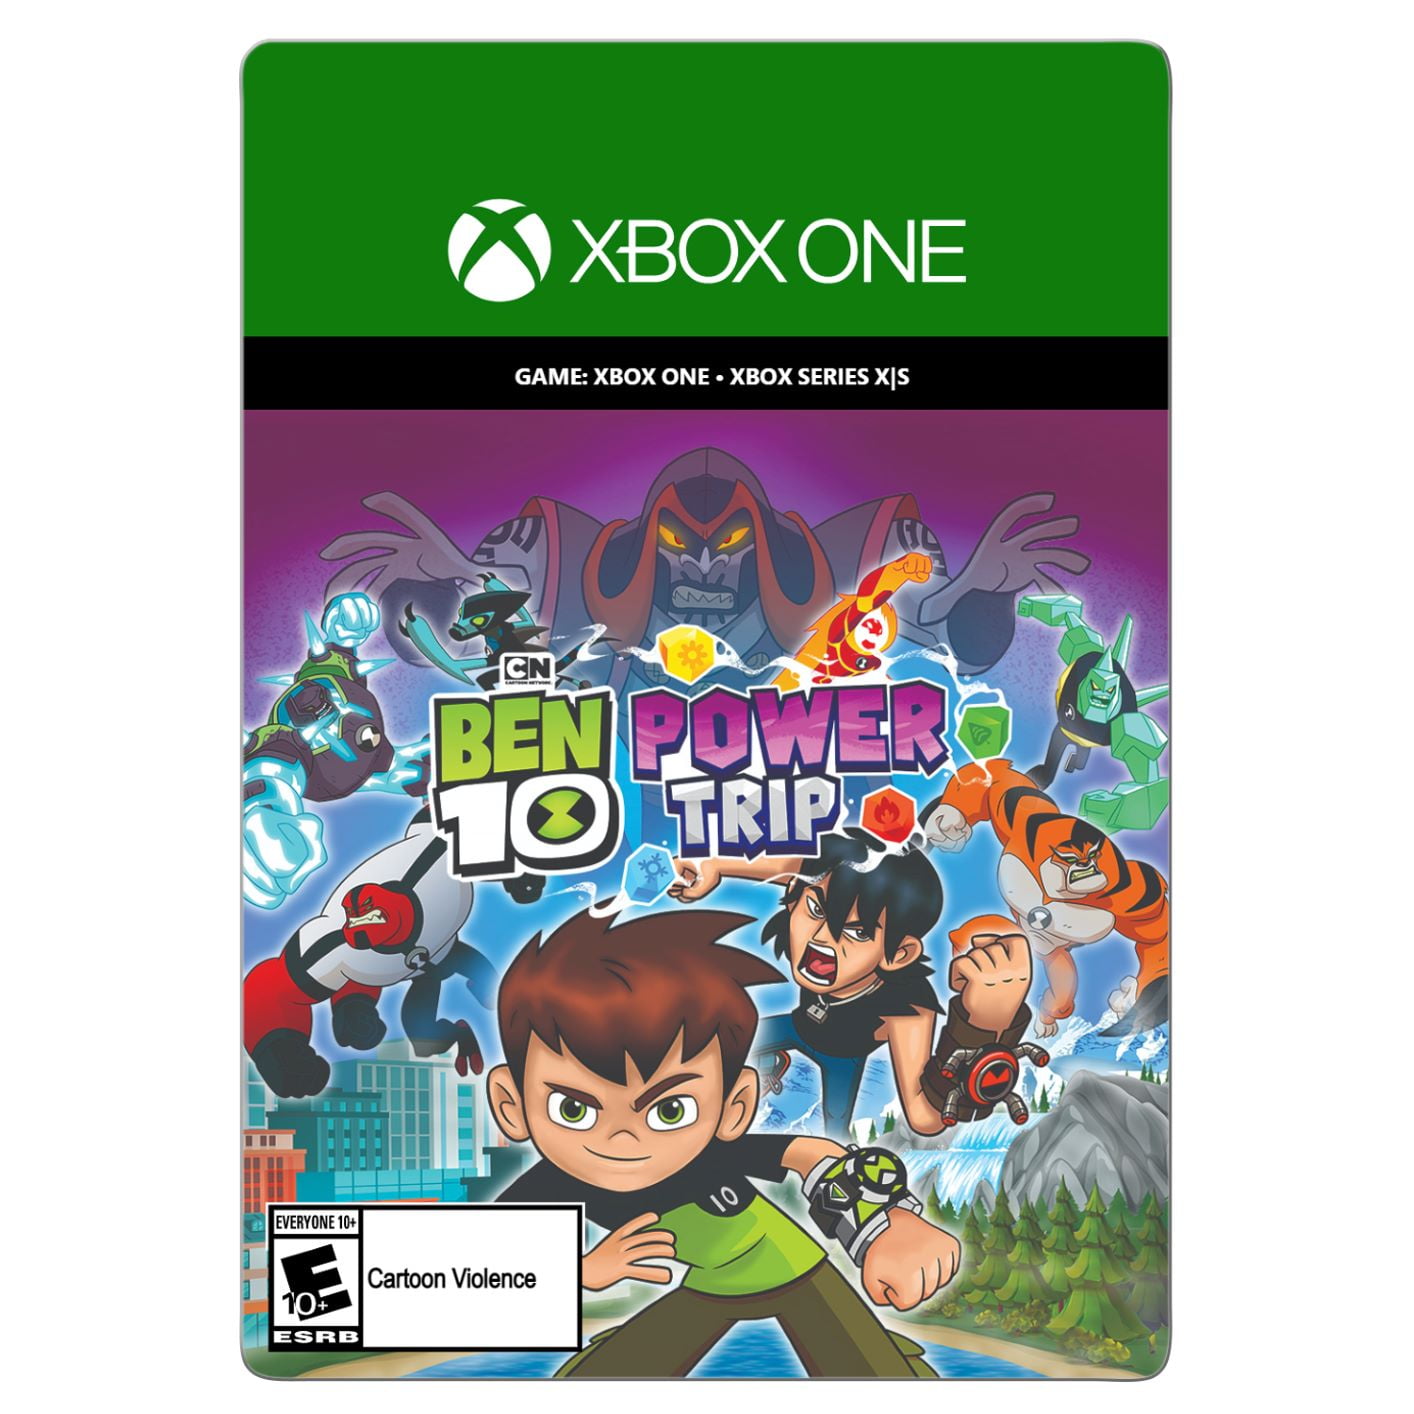 Ben 10 - Xbox One, Xbox One